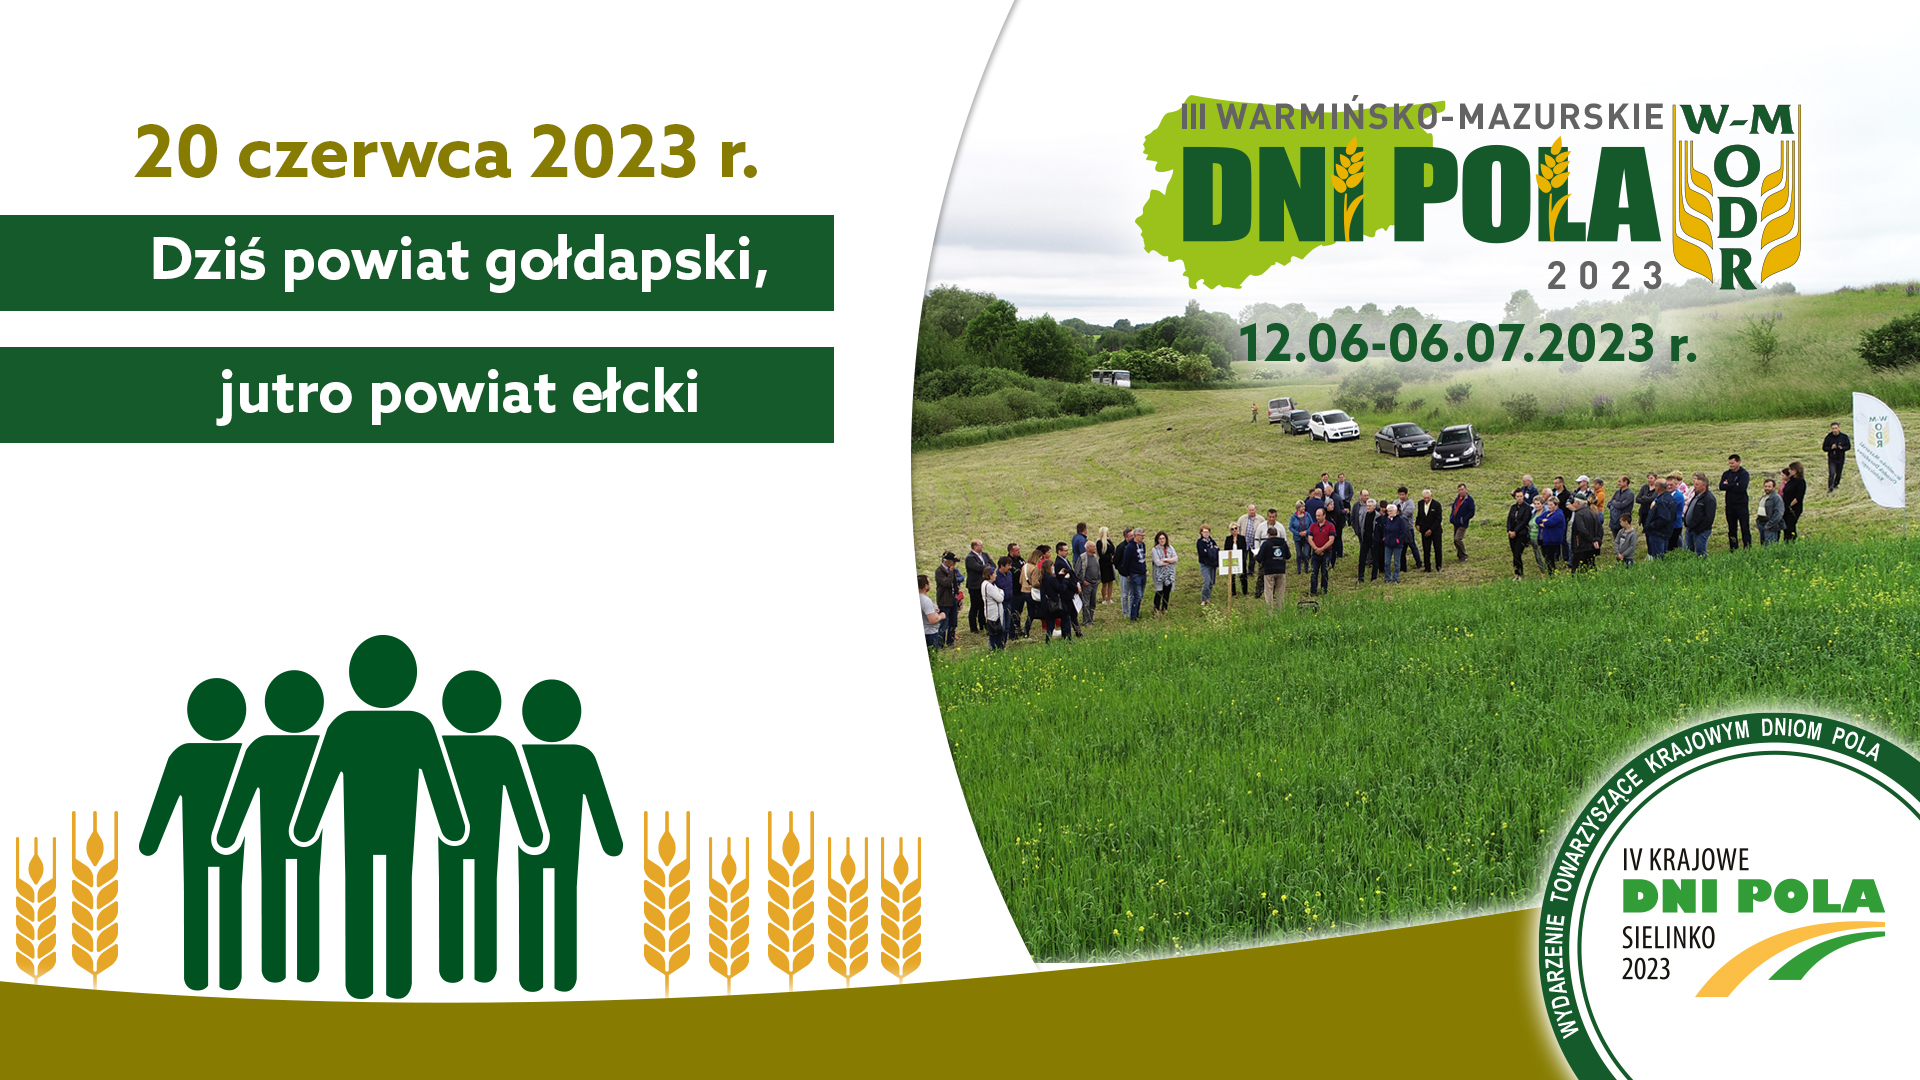 III Warmińsko-Mazurskie Dni Pola – dzisiaj odwiedzamy powiat gołdapski – 20.06.2023r.